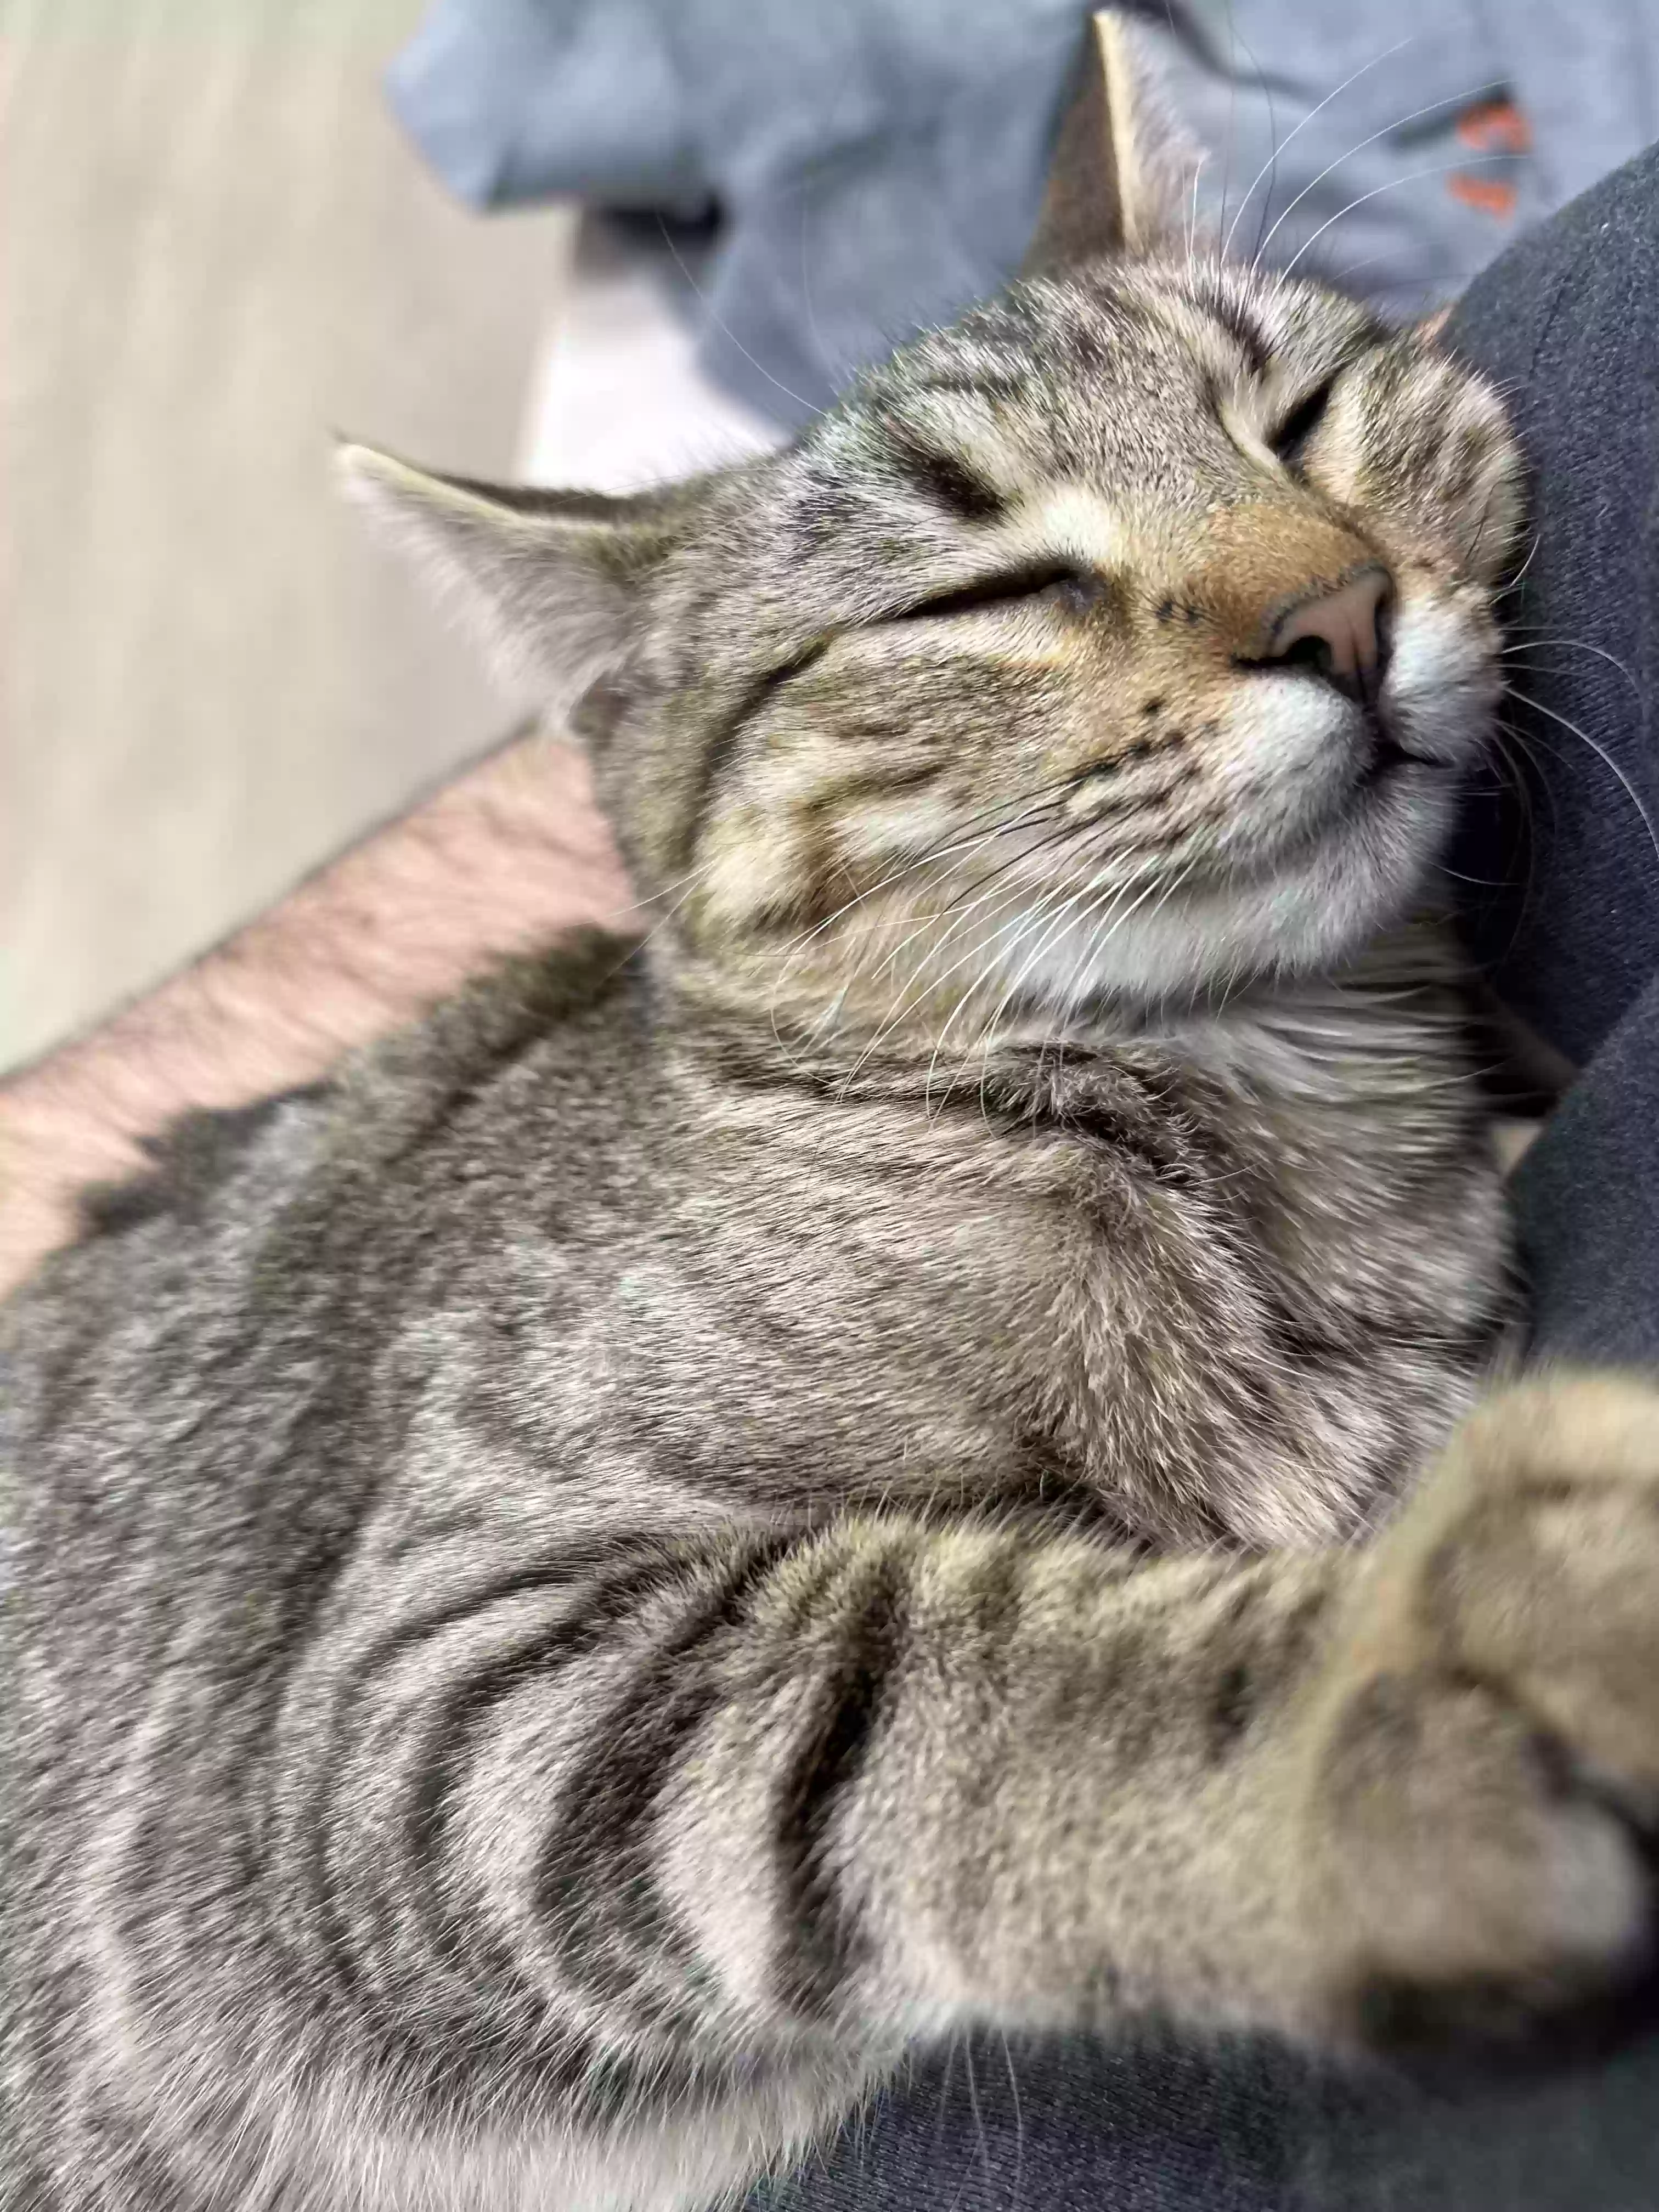 adoptable Cat in Smyrna,GA named June